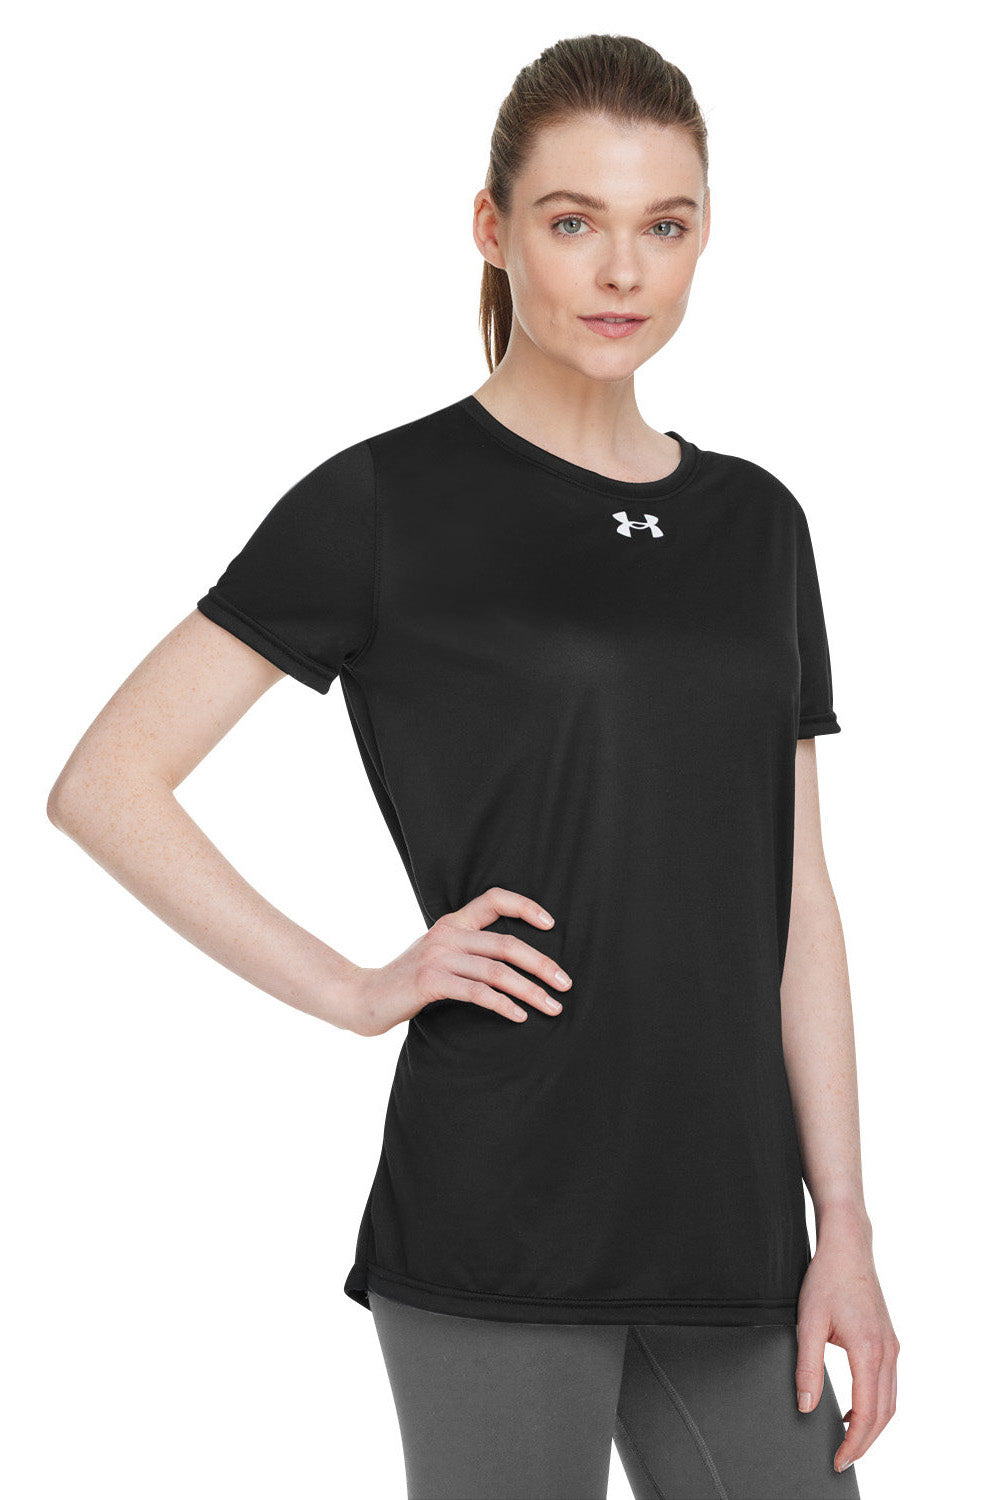 Under Armour 1376847 Womens Team Tech Moisture Wicking Short Sleeve Crewneck T-Shirt Black Model 3Q